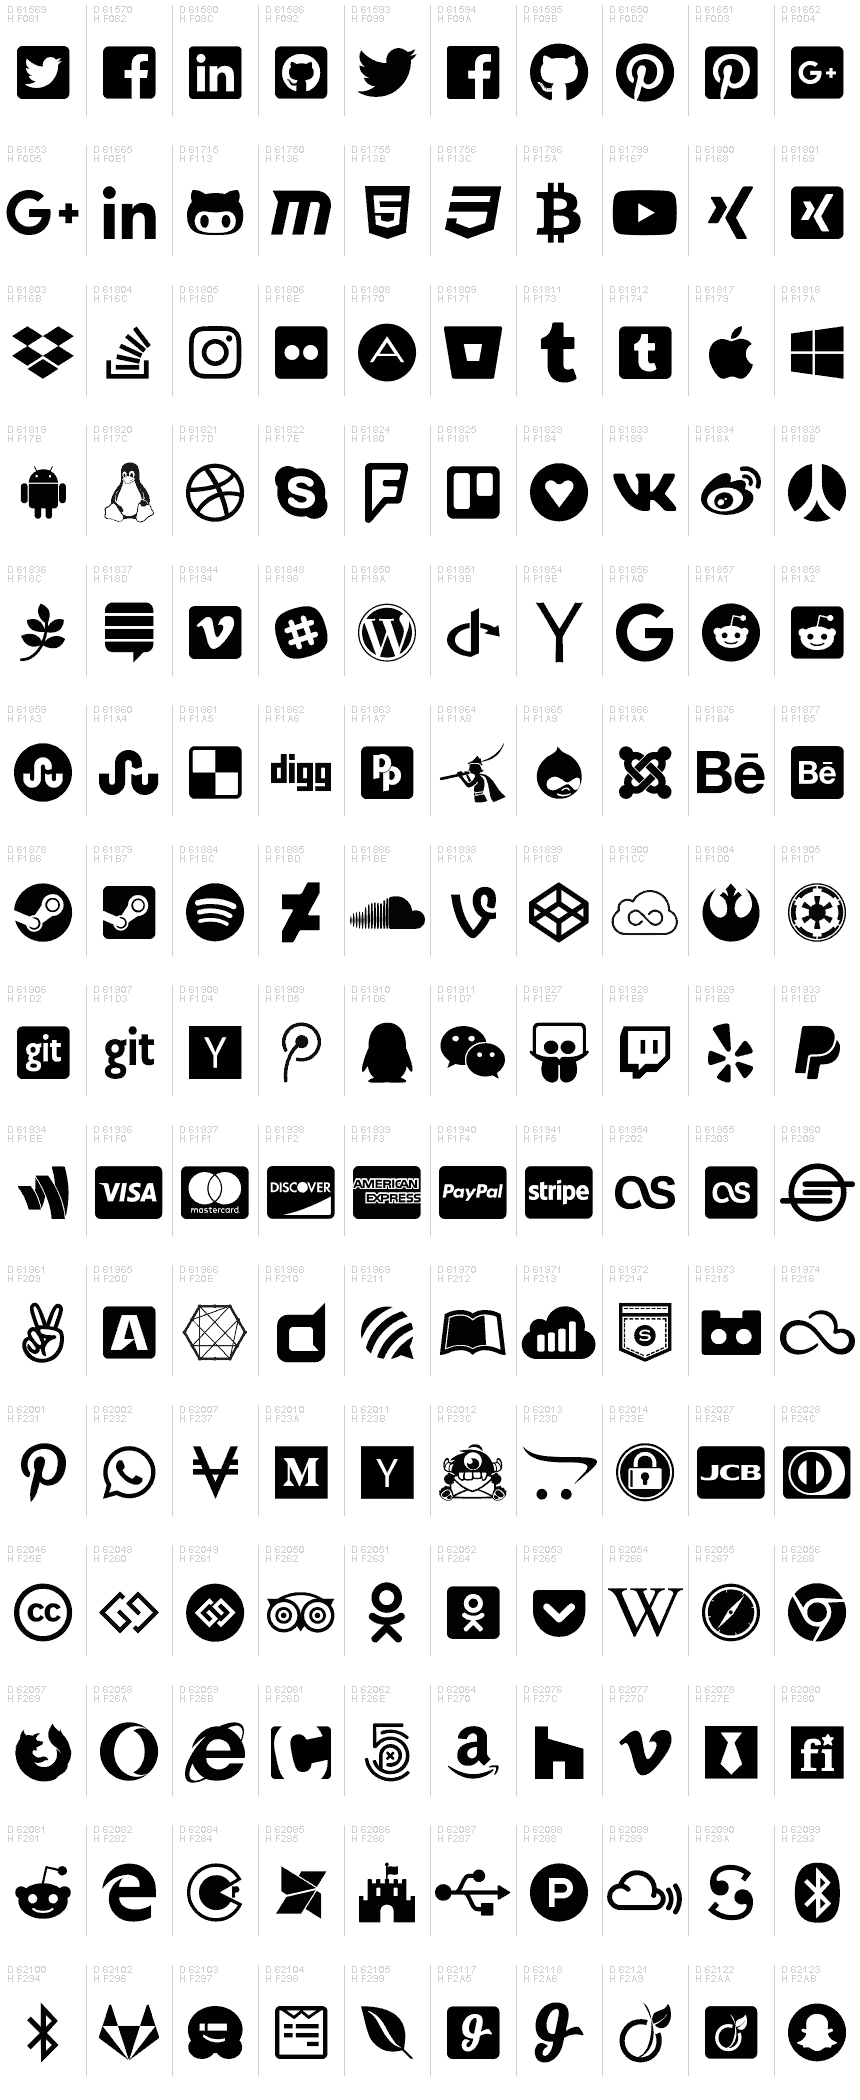 Font Awesome 5 cung cấp nhiều loại icon khác nhau cho các thương hiệu để giới thiệu sản phẩm và dịch vụ của họ một cách dễ dàng và chuyên nghiệp nhất. Với các biểu tượng và logo phổ biến của thương hiệu, bạn có thể tạo ra các thiết kế độc đáo và thu hút khách hàng mục tiêu của mình một cách nhanh chóng và hiệu quả. Hãy truy cập để tìm hiểu thêm về Font Awesome 5 cho thương hiệu.